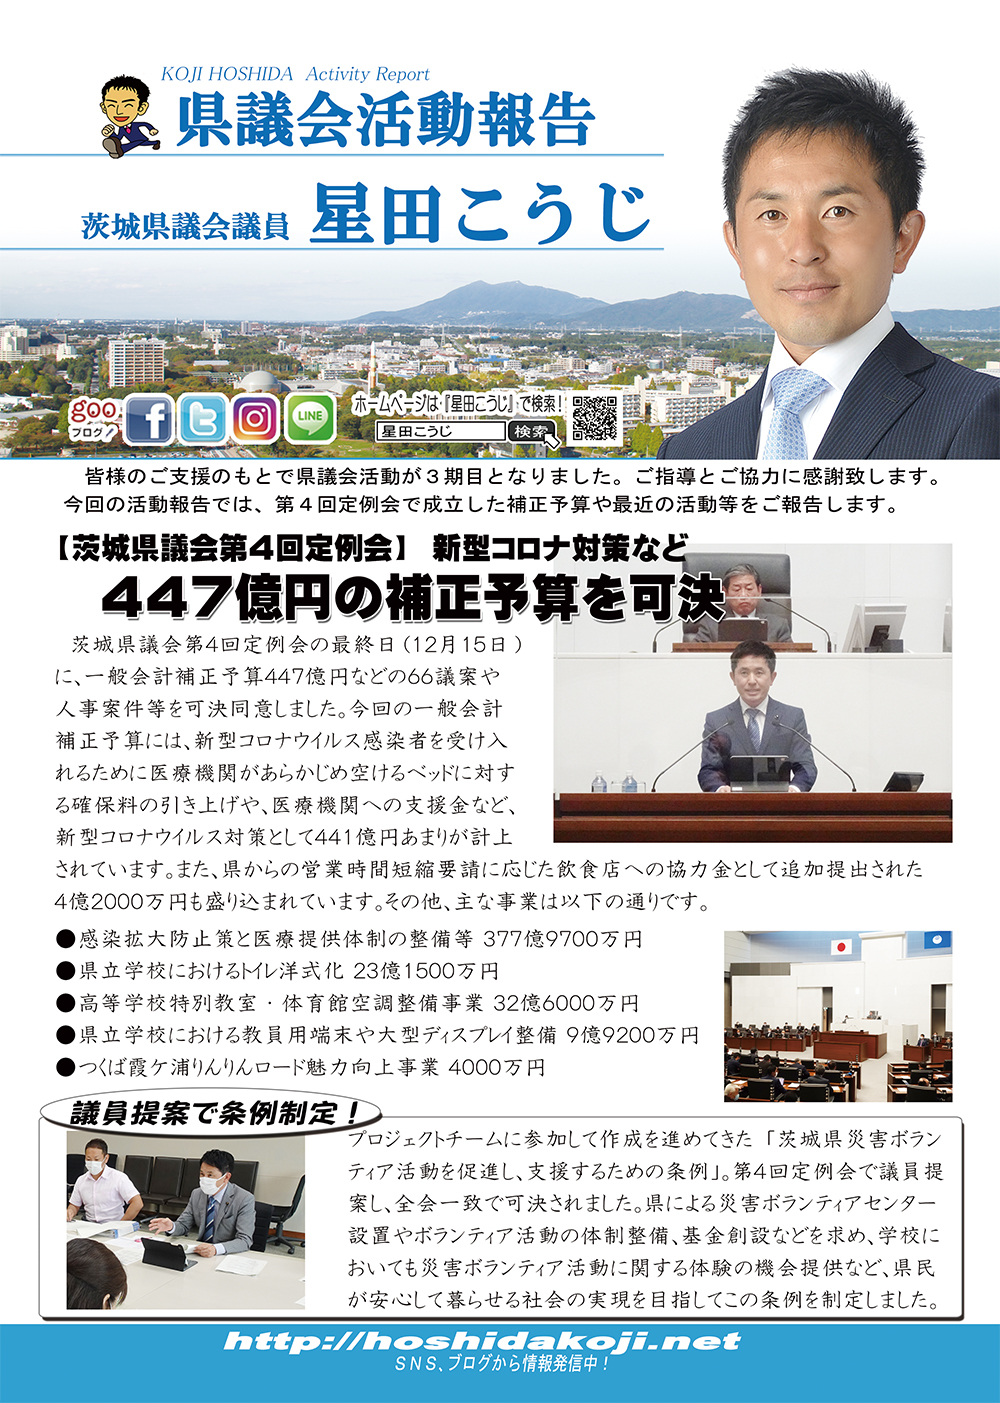 茨城県議会議員 星田こうじ 県政活動報告 Vol.32